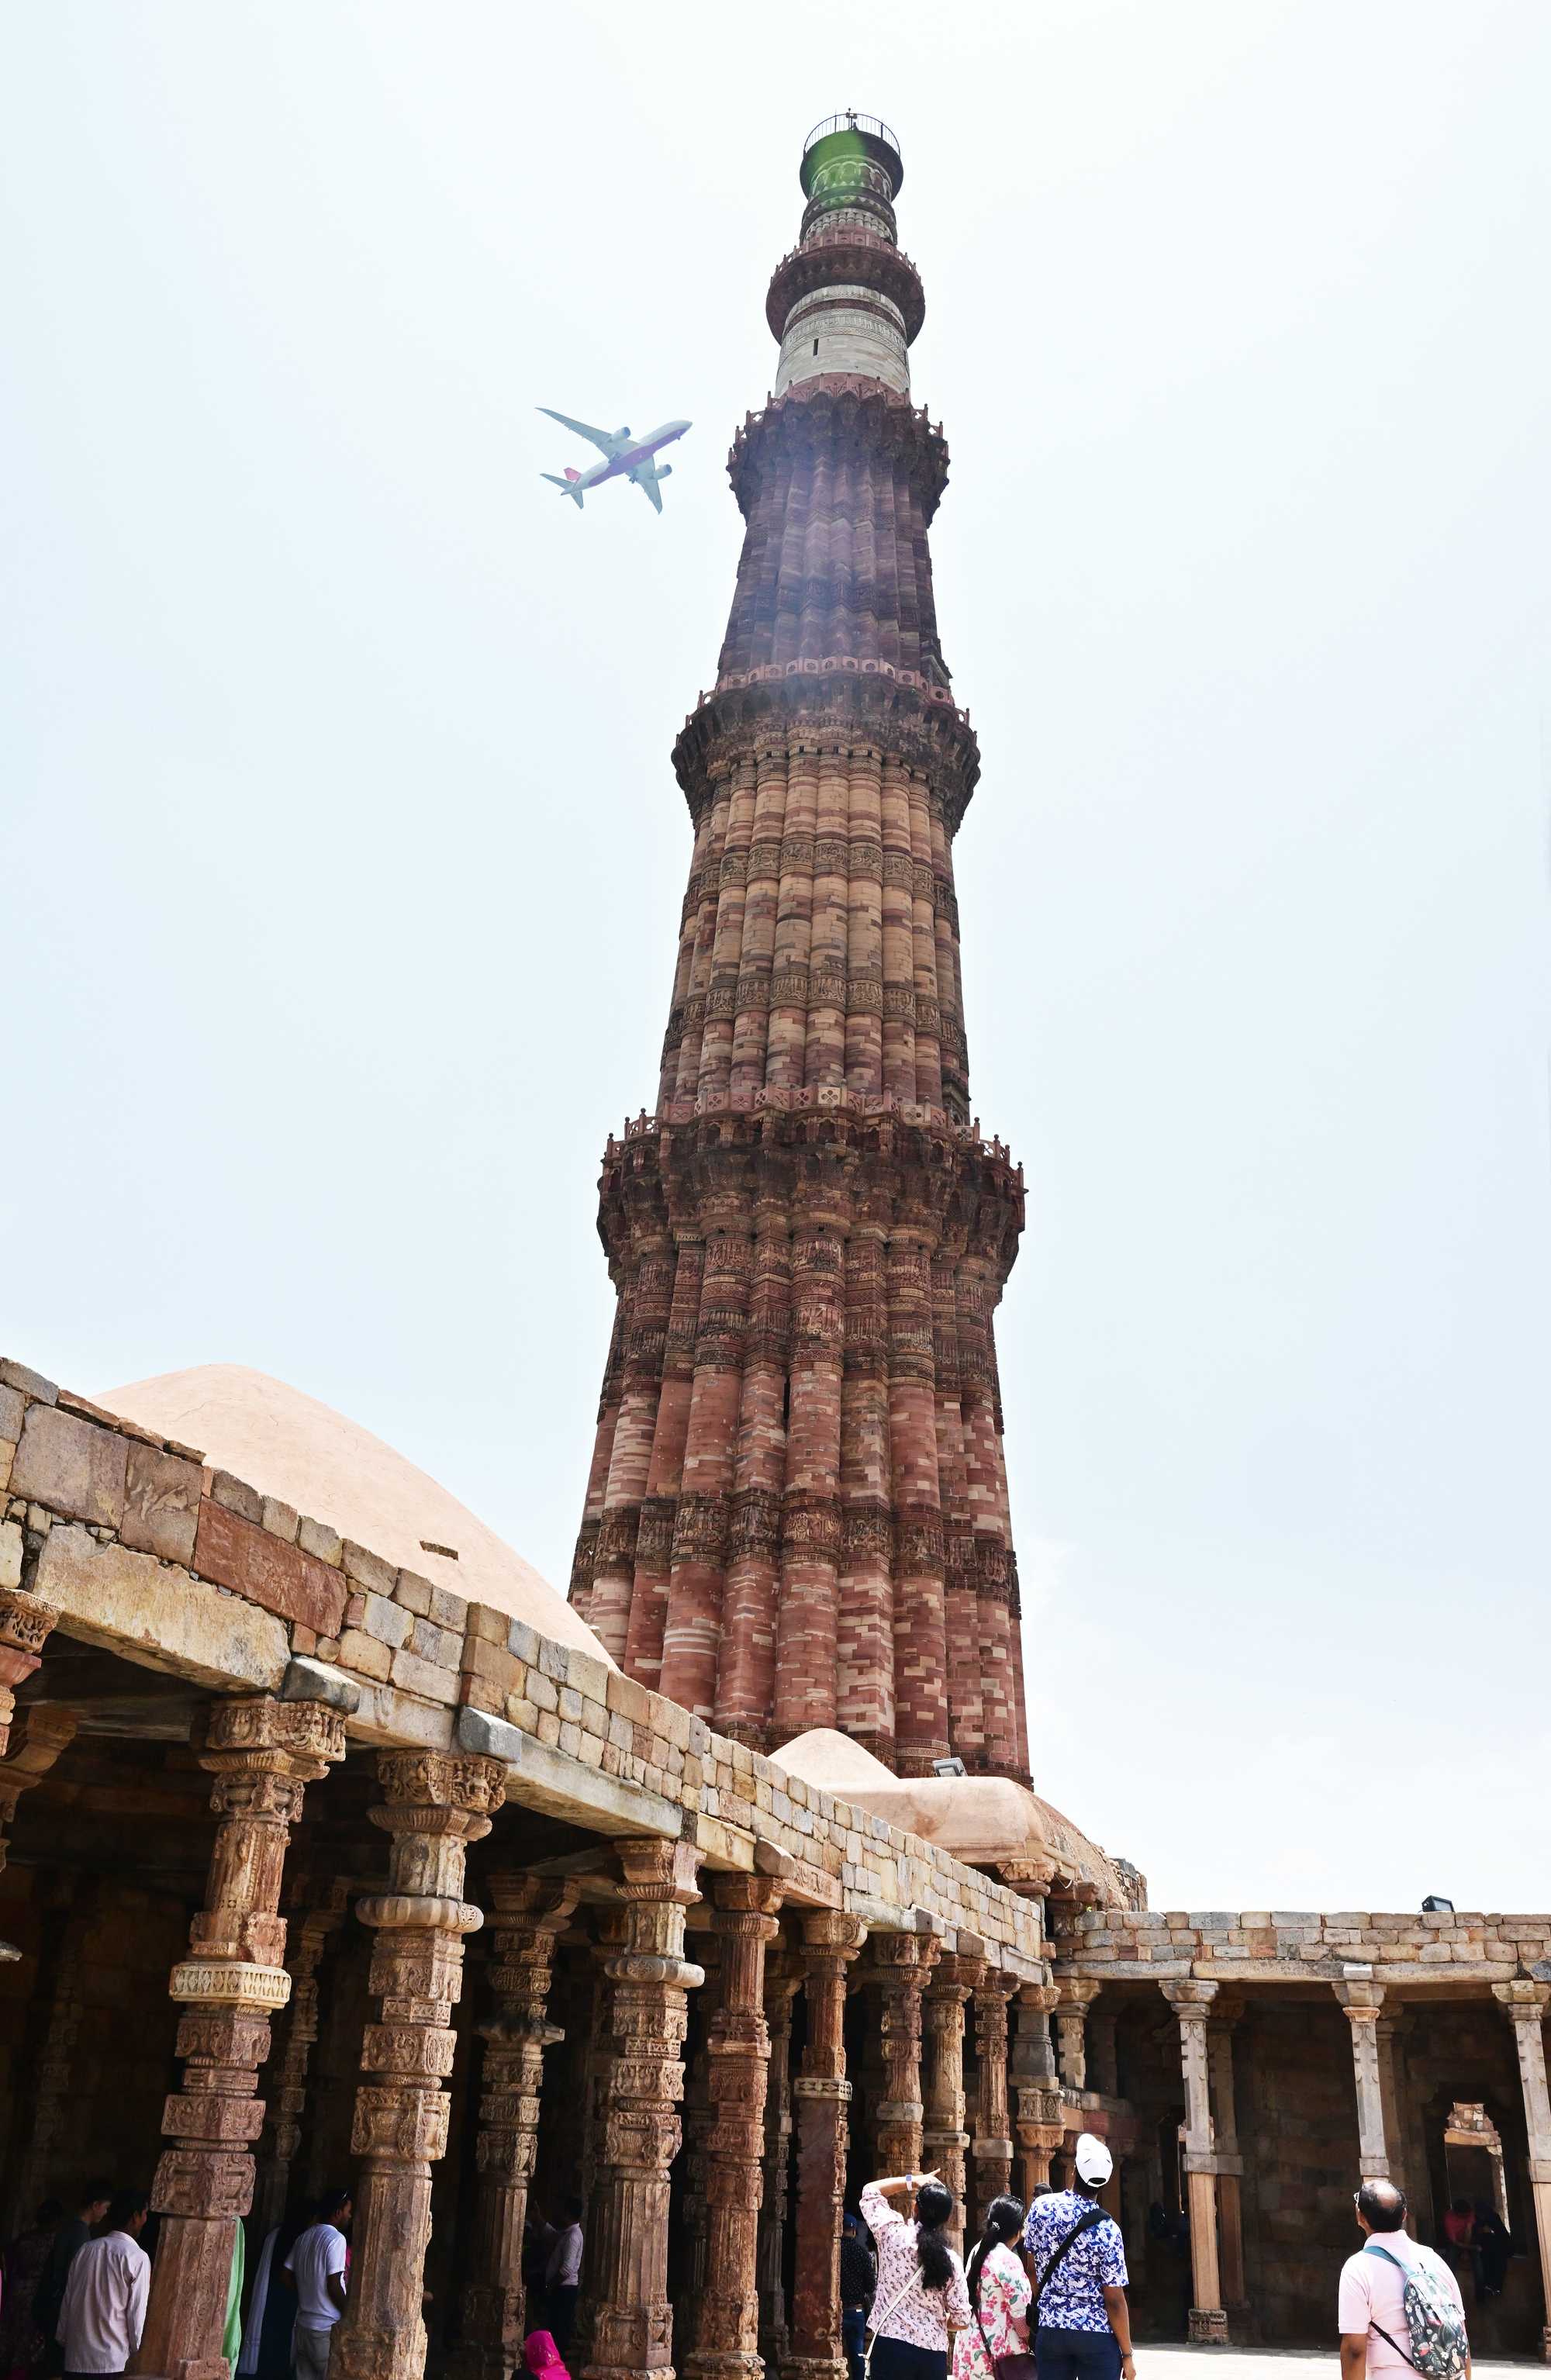 델리의 상징물 중 하나인 쿠트브 미나르. 힌두교 사원을 부수고 지어 올린 이슬람의 승전탑이다. 1993년 유네스코 세계유산에 지정됐다.